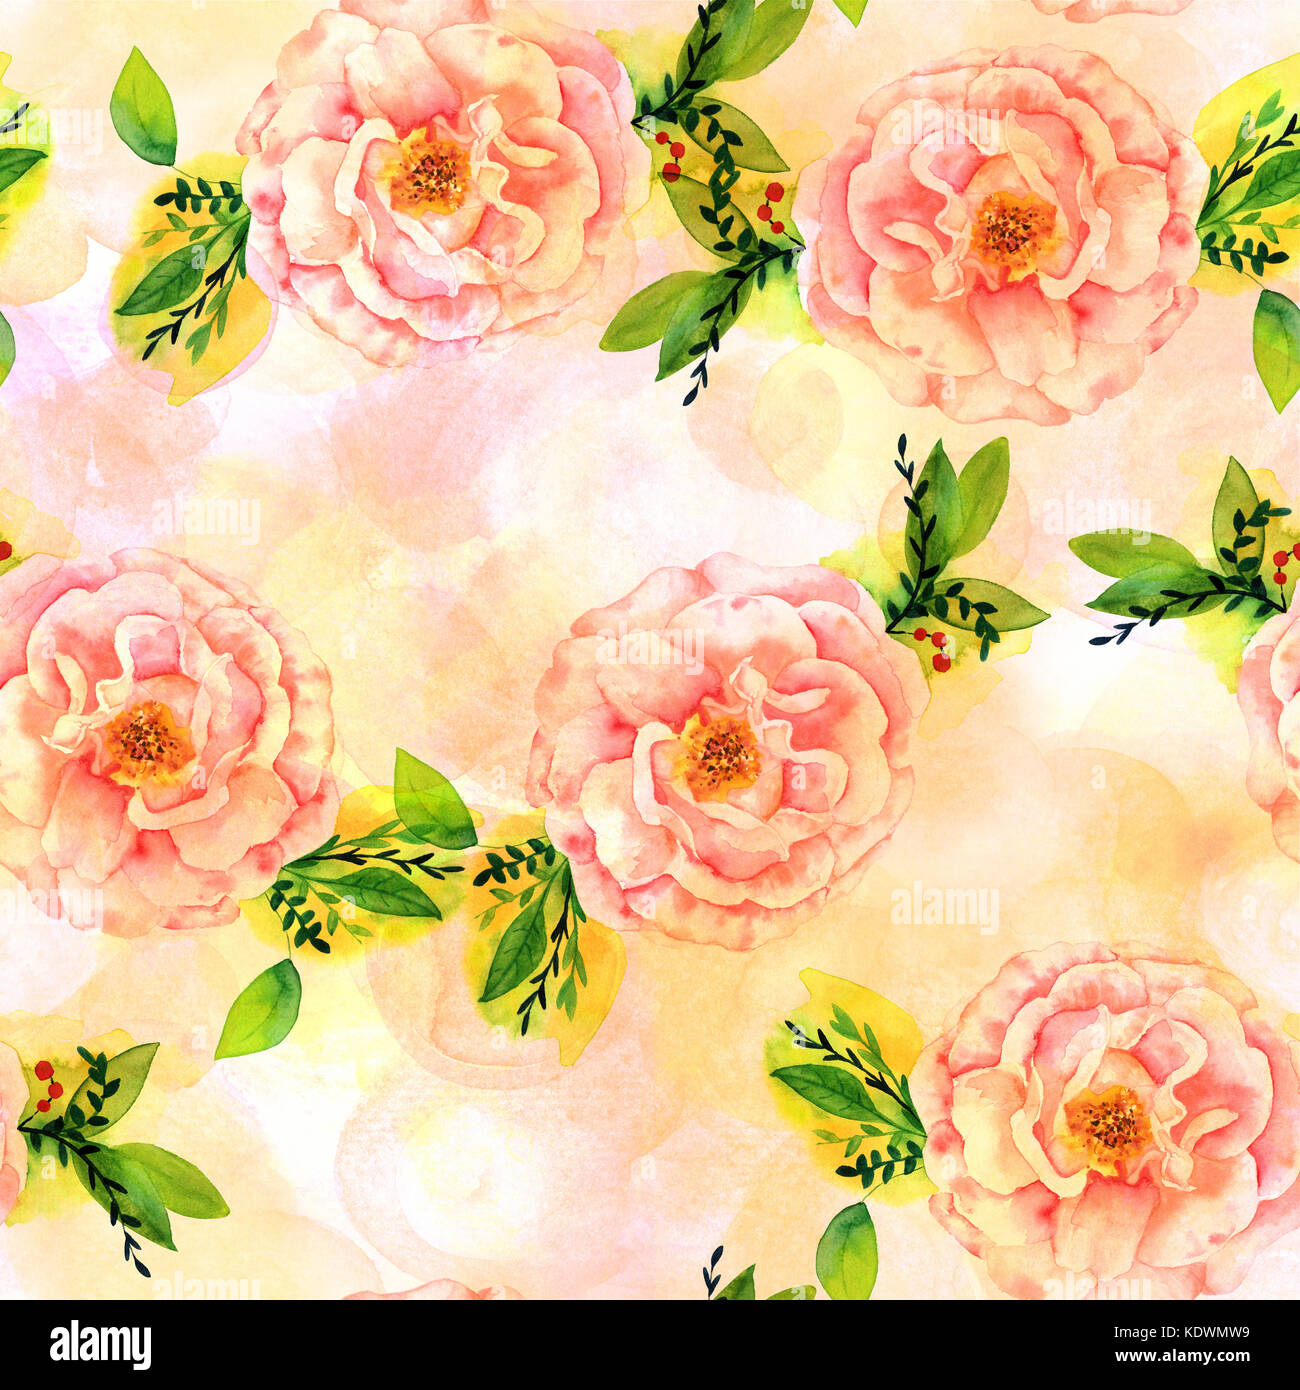 Eine nahtlose Muster mit einem Aquarell Zeichnung eines blühenden rosa Rose mit grünen Zweigen und Blättern, in Pastellfarben Pinselstriche, verblasst und getönten Stockfoto